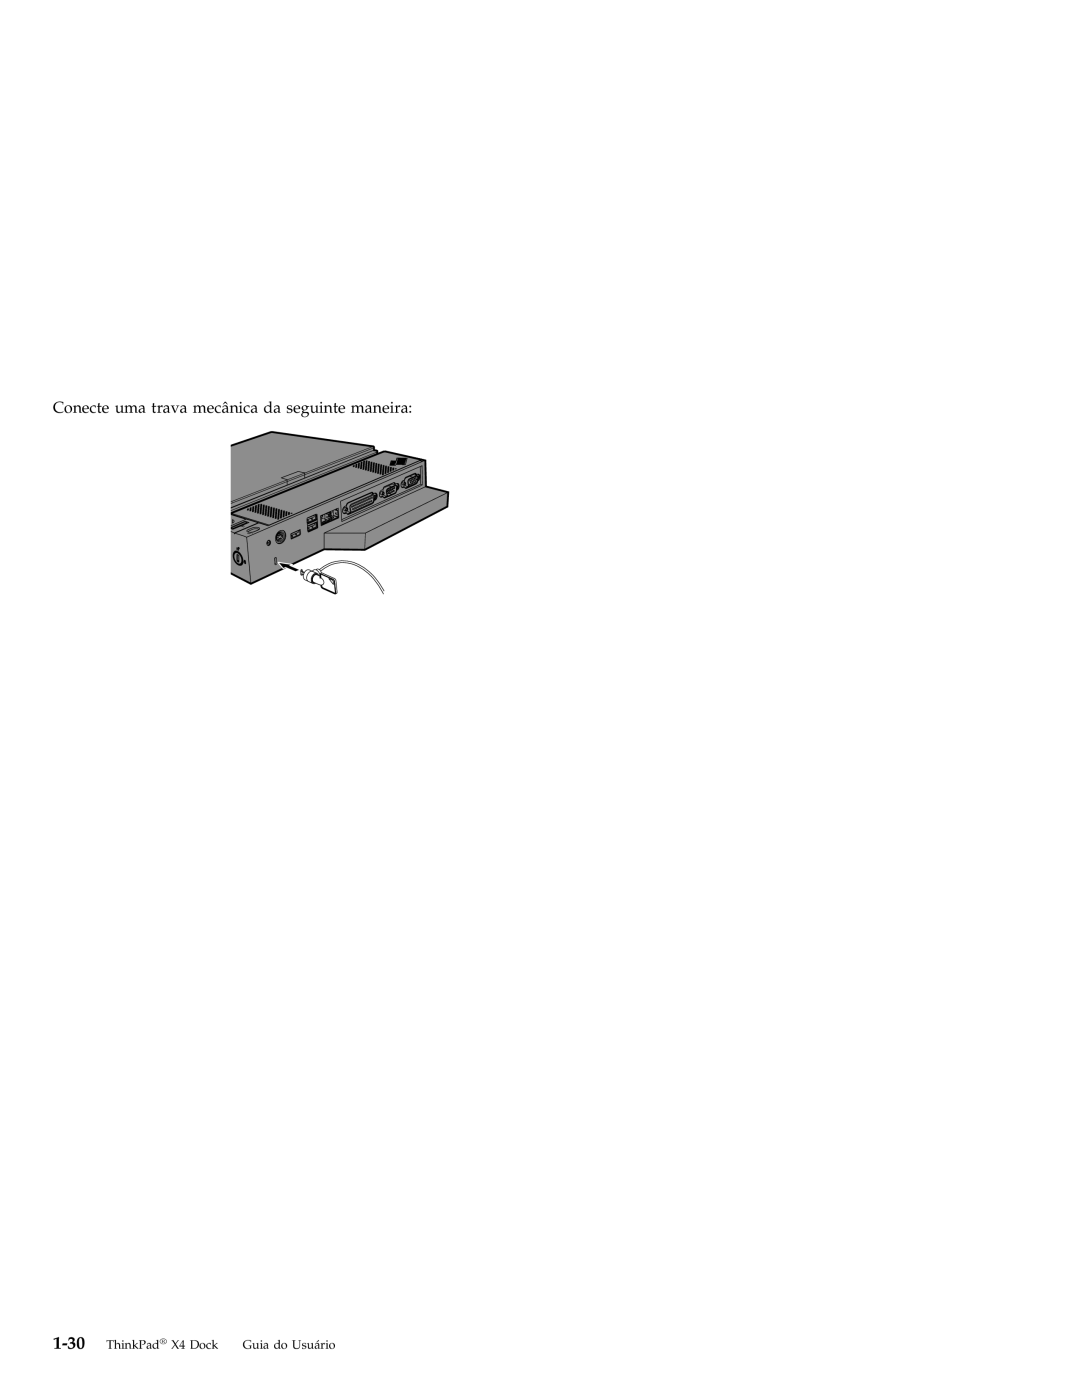 IBM manual Conecte uma trava mecânica da seguinte maneira, ThinkPad X4 Dock, Guia do Usuário 